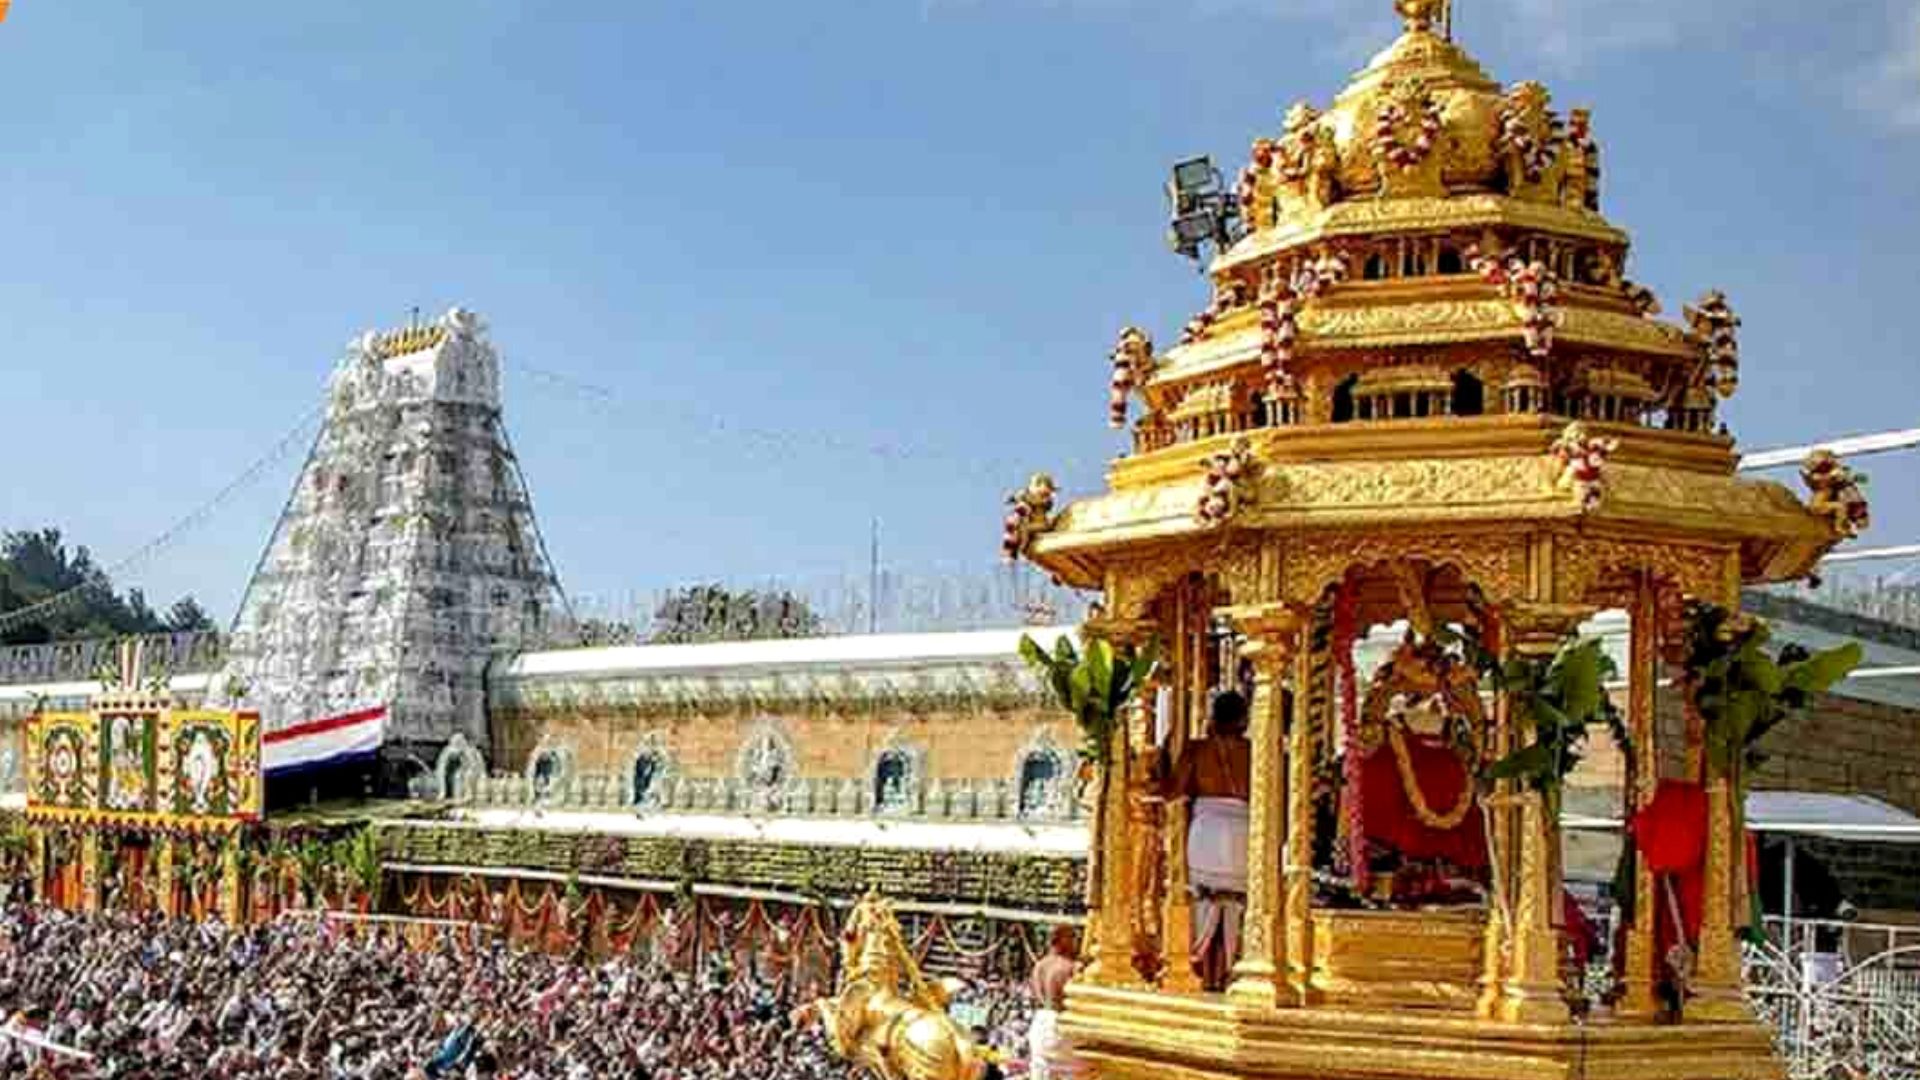 Tirupati balaji Devasthanams Mandir dharam karam worth 86000 crores 14000  crores banks 14 ton gold ukup | Tirupati मंदिर ने जारी किया संपत्तियों का  ब्योरा, जानिए कितने टन सोना और प्रॉपर्टी ...